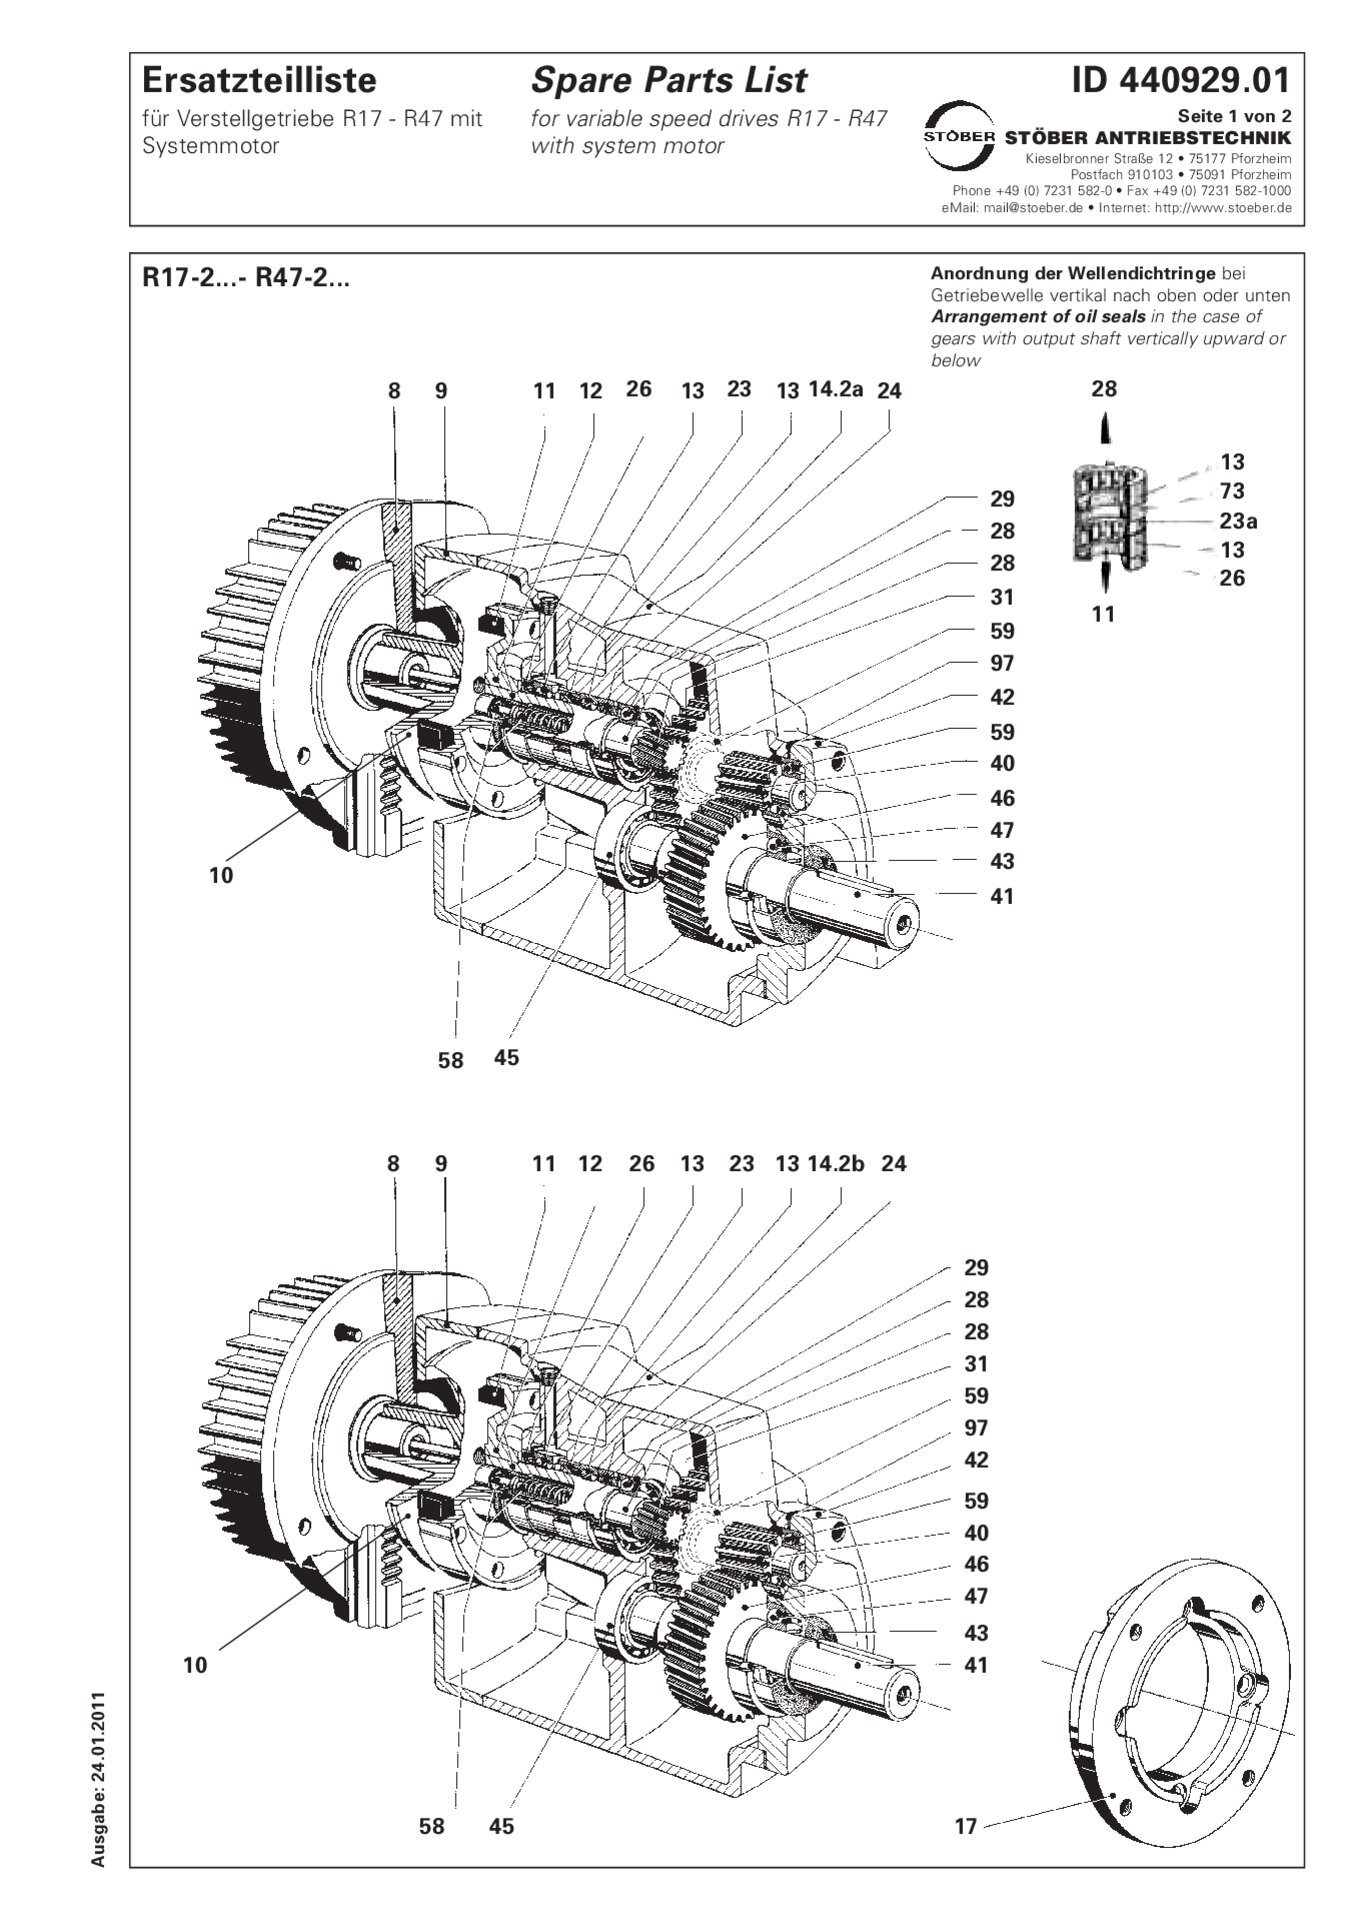 Listino dei pezzi di ricambio R17-2/R27-2/R37-2/R47-2 con motore di sistema